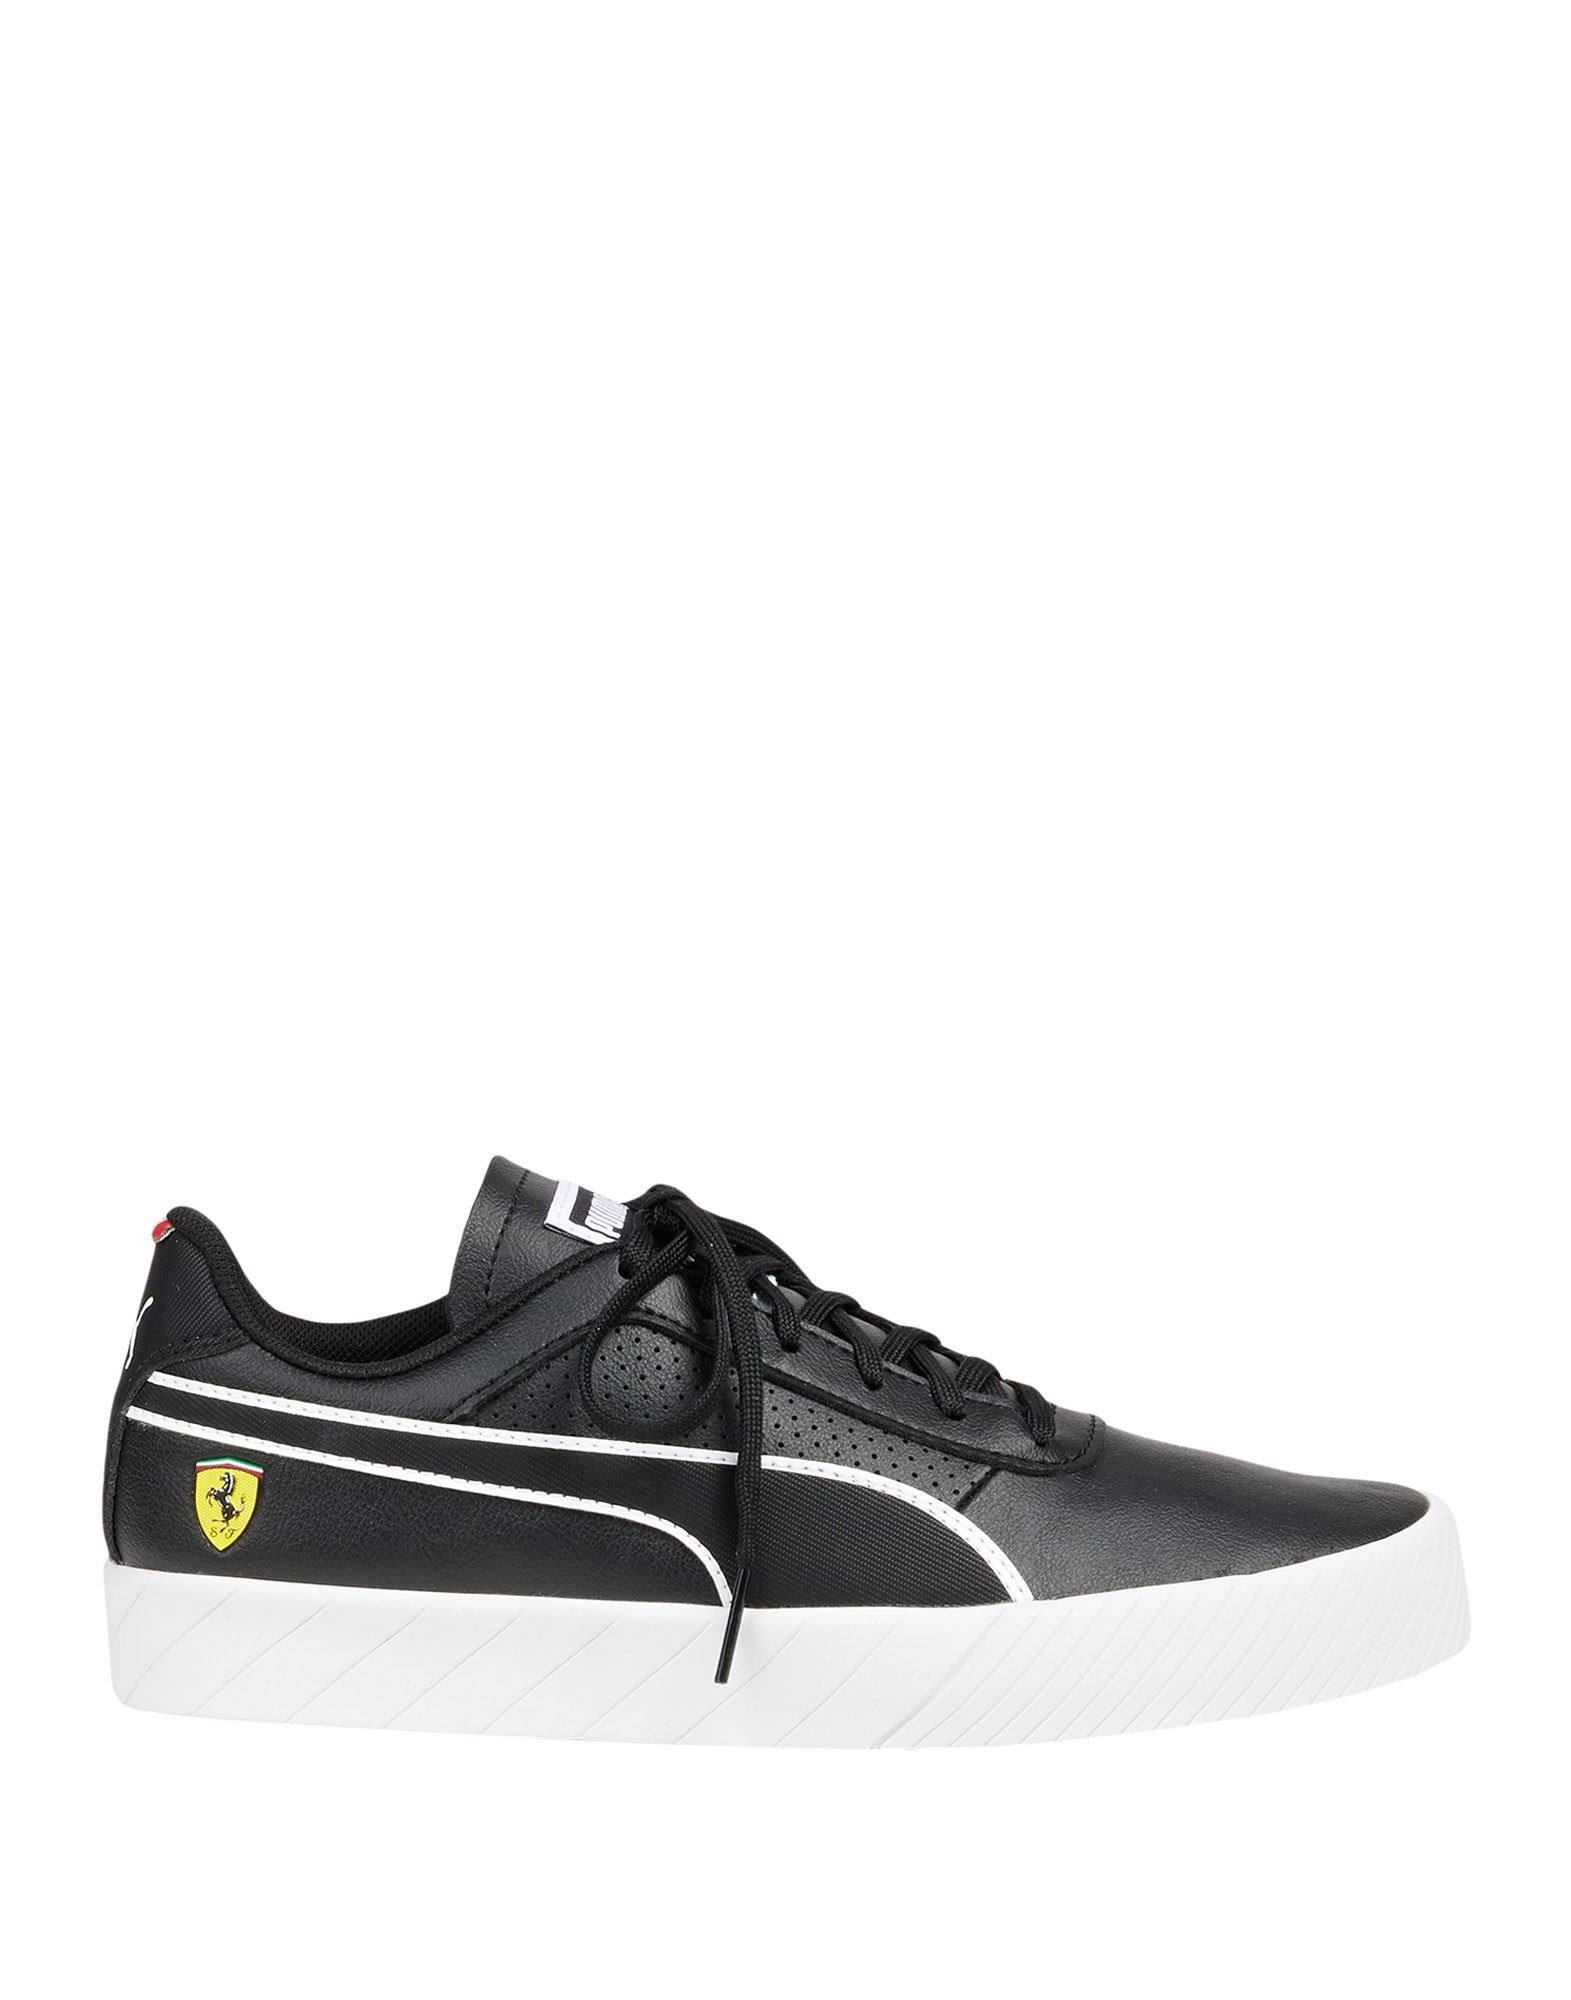 Puma X Ferrari Sneakers In Black